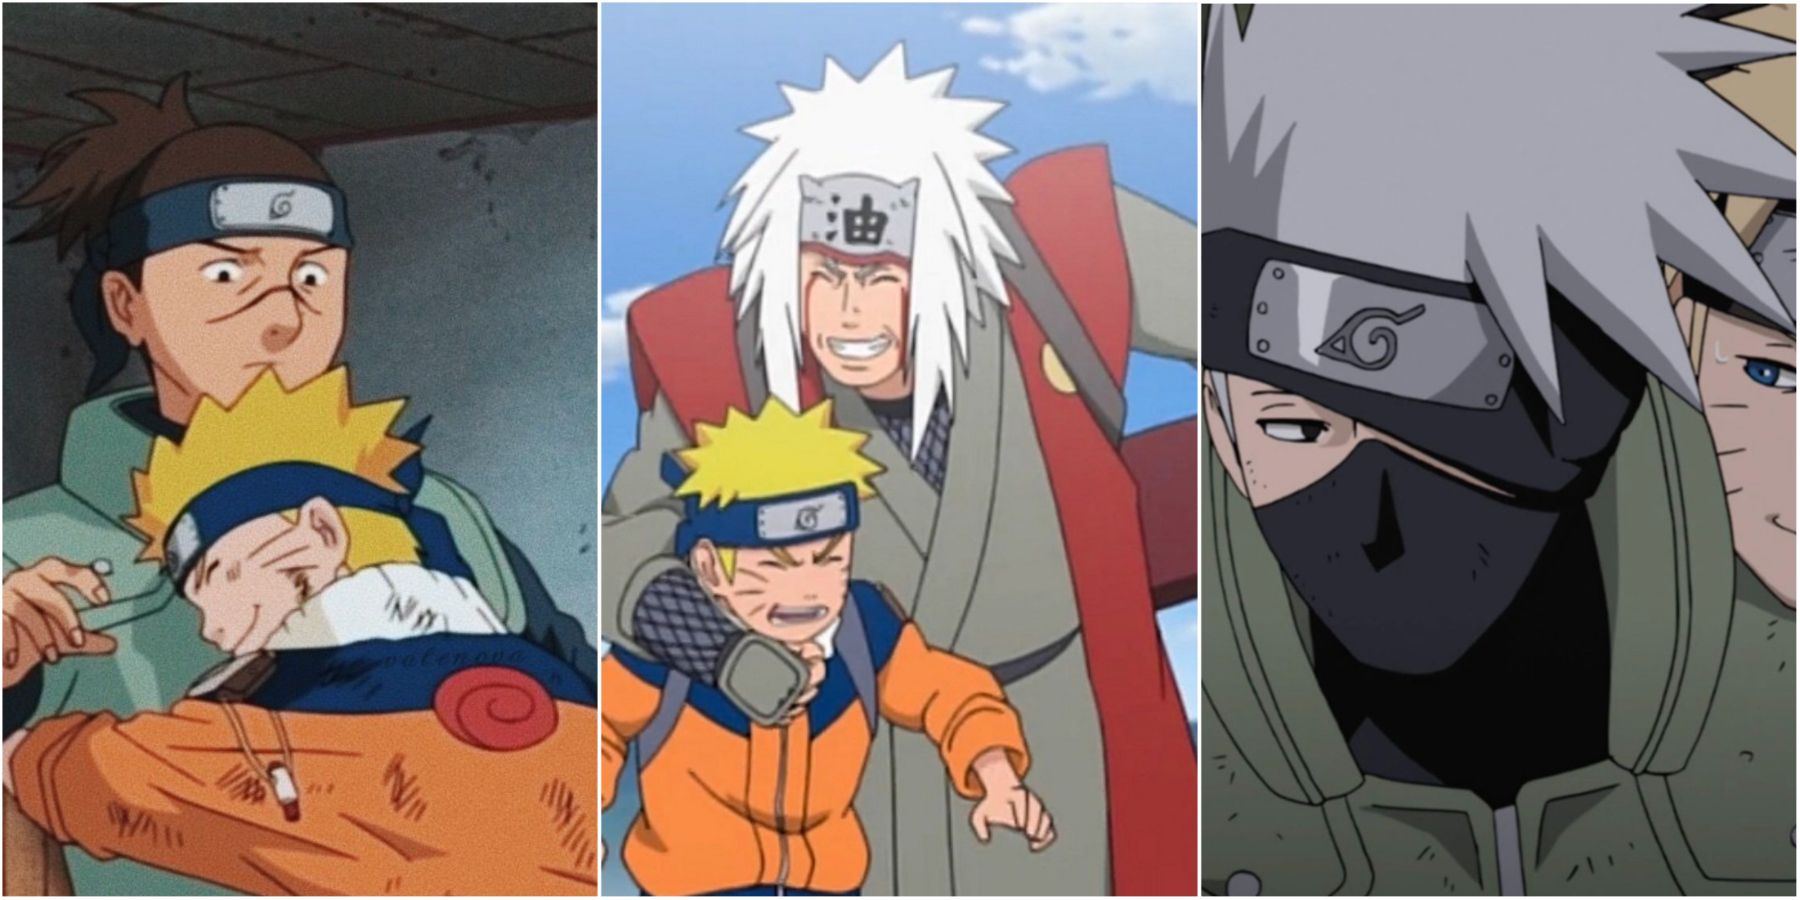 Who is Iruka Umino and how did he become the sensei for Naruto